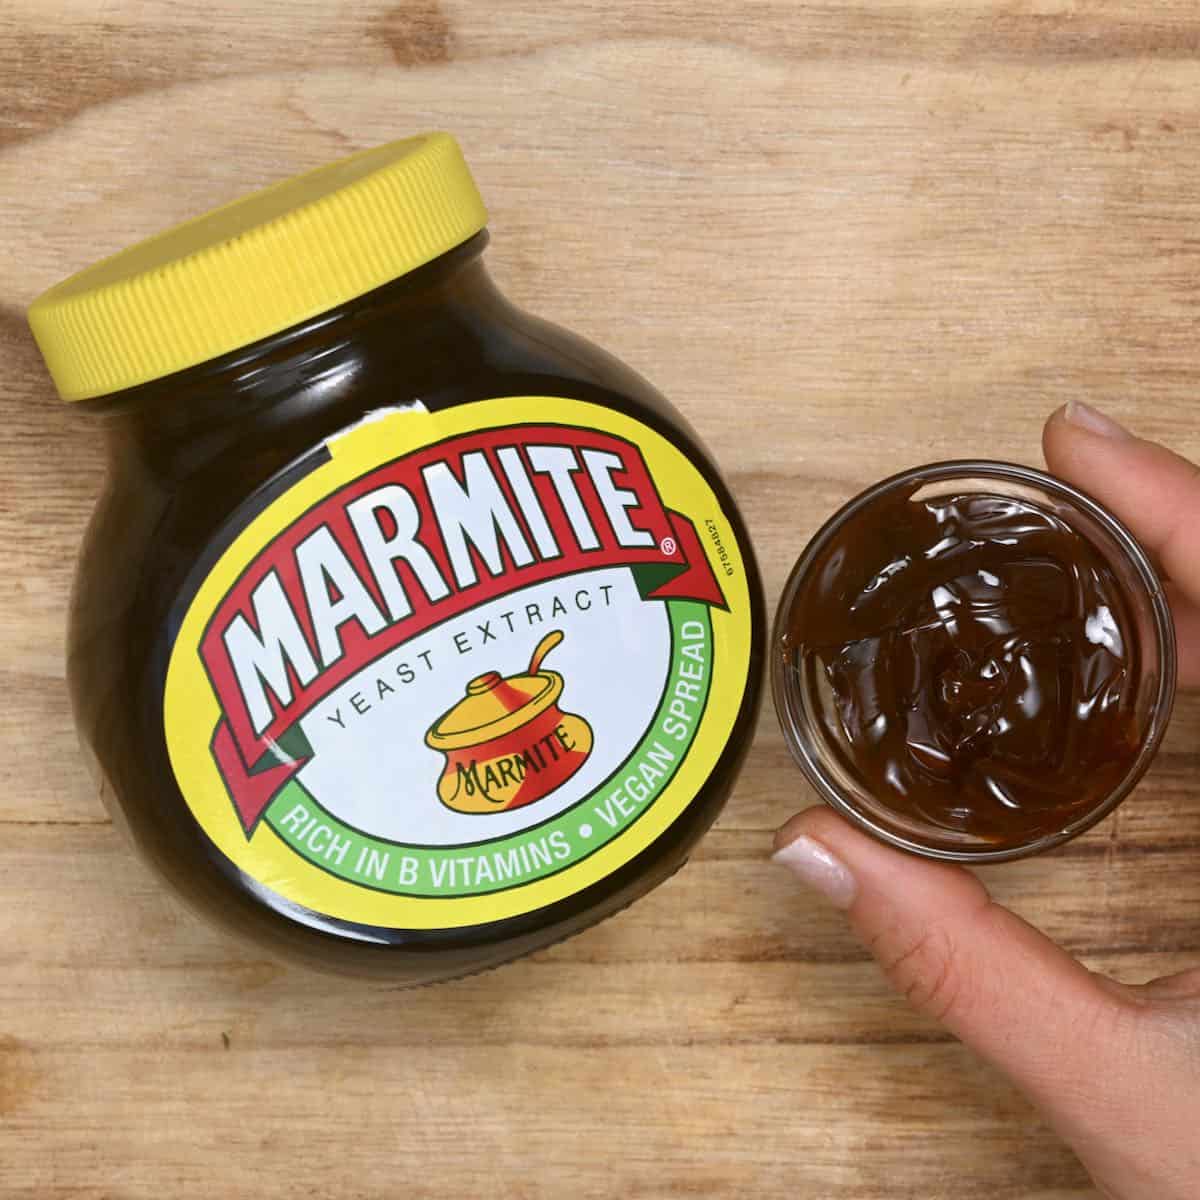 marmite in little cup next to marmite jar